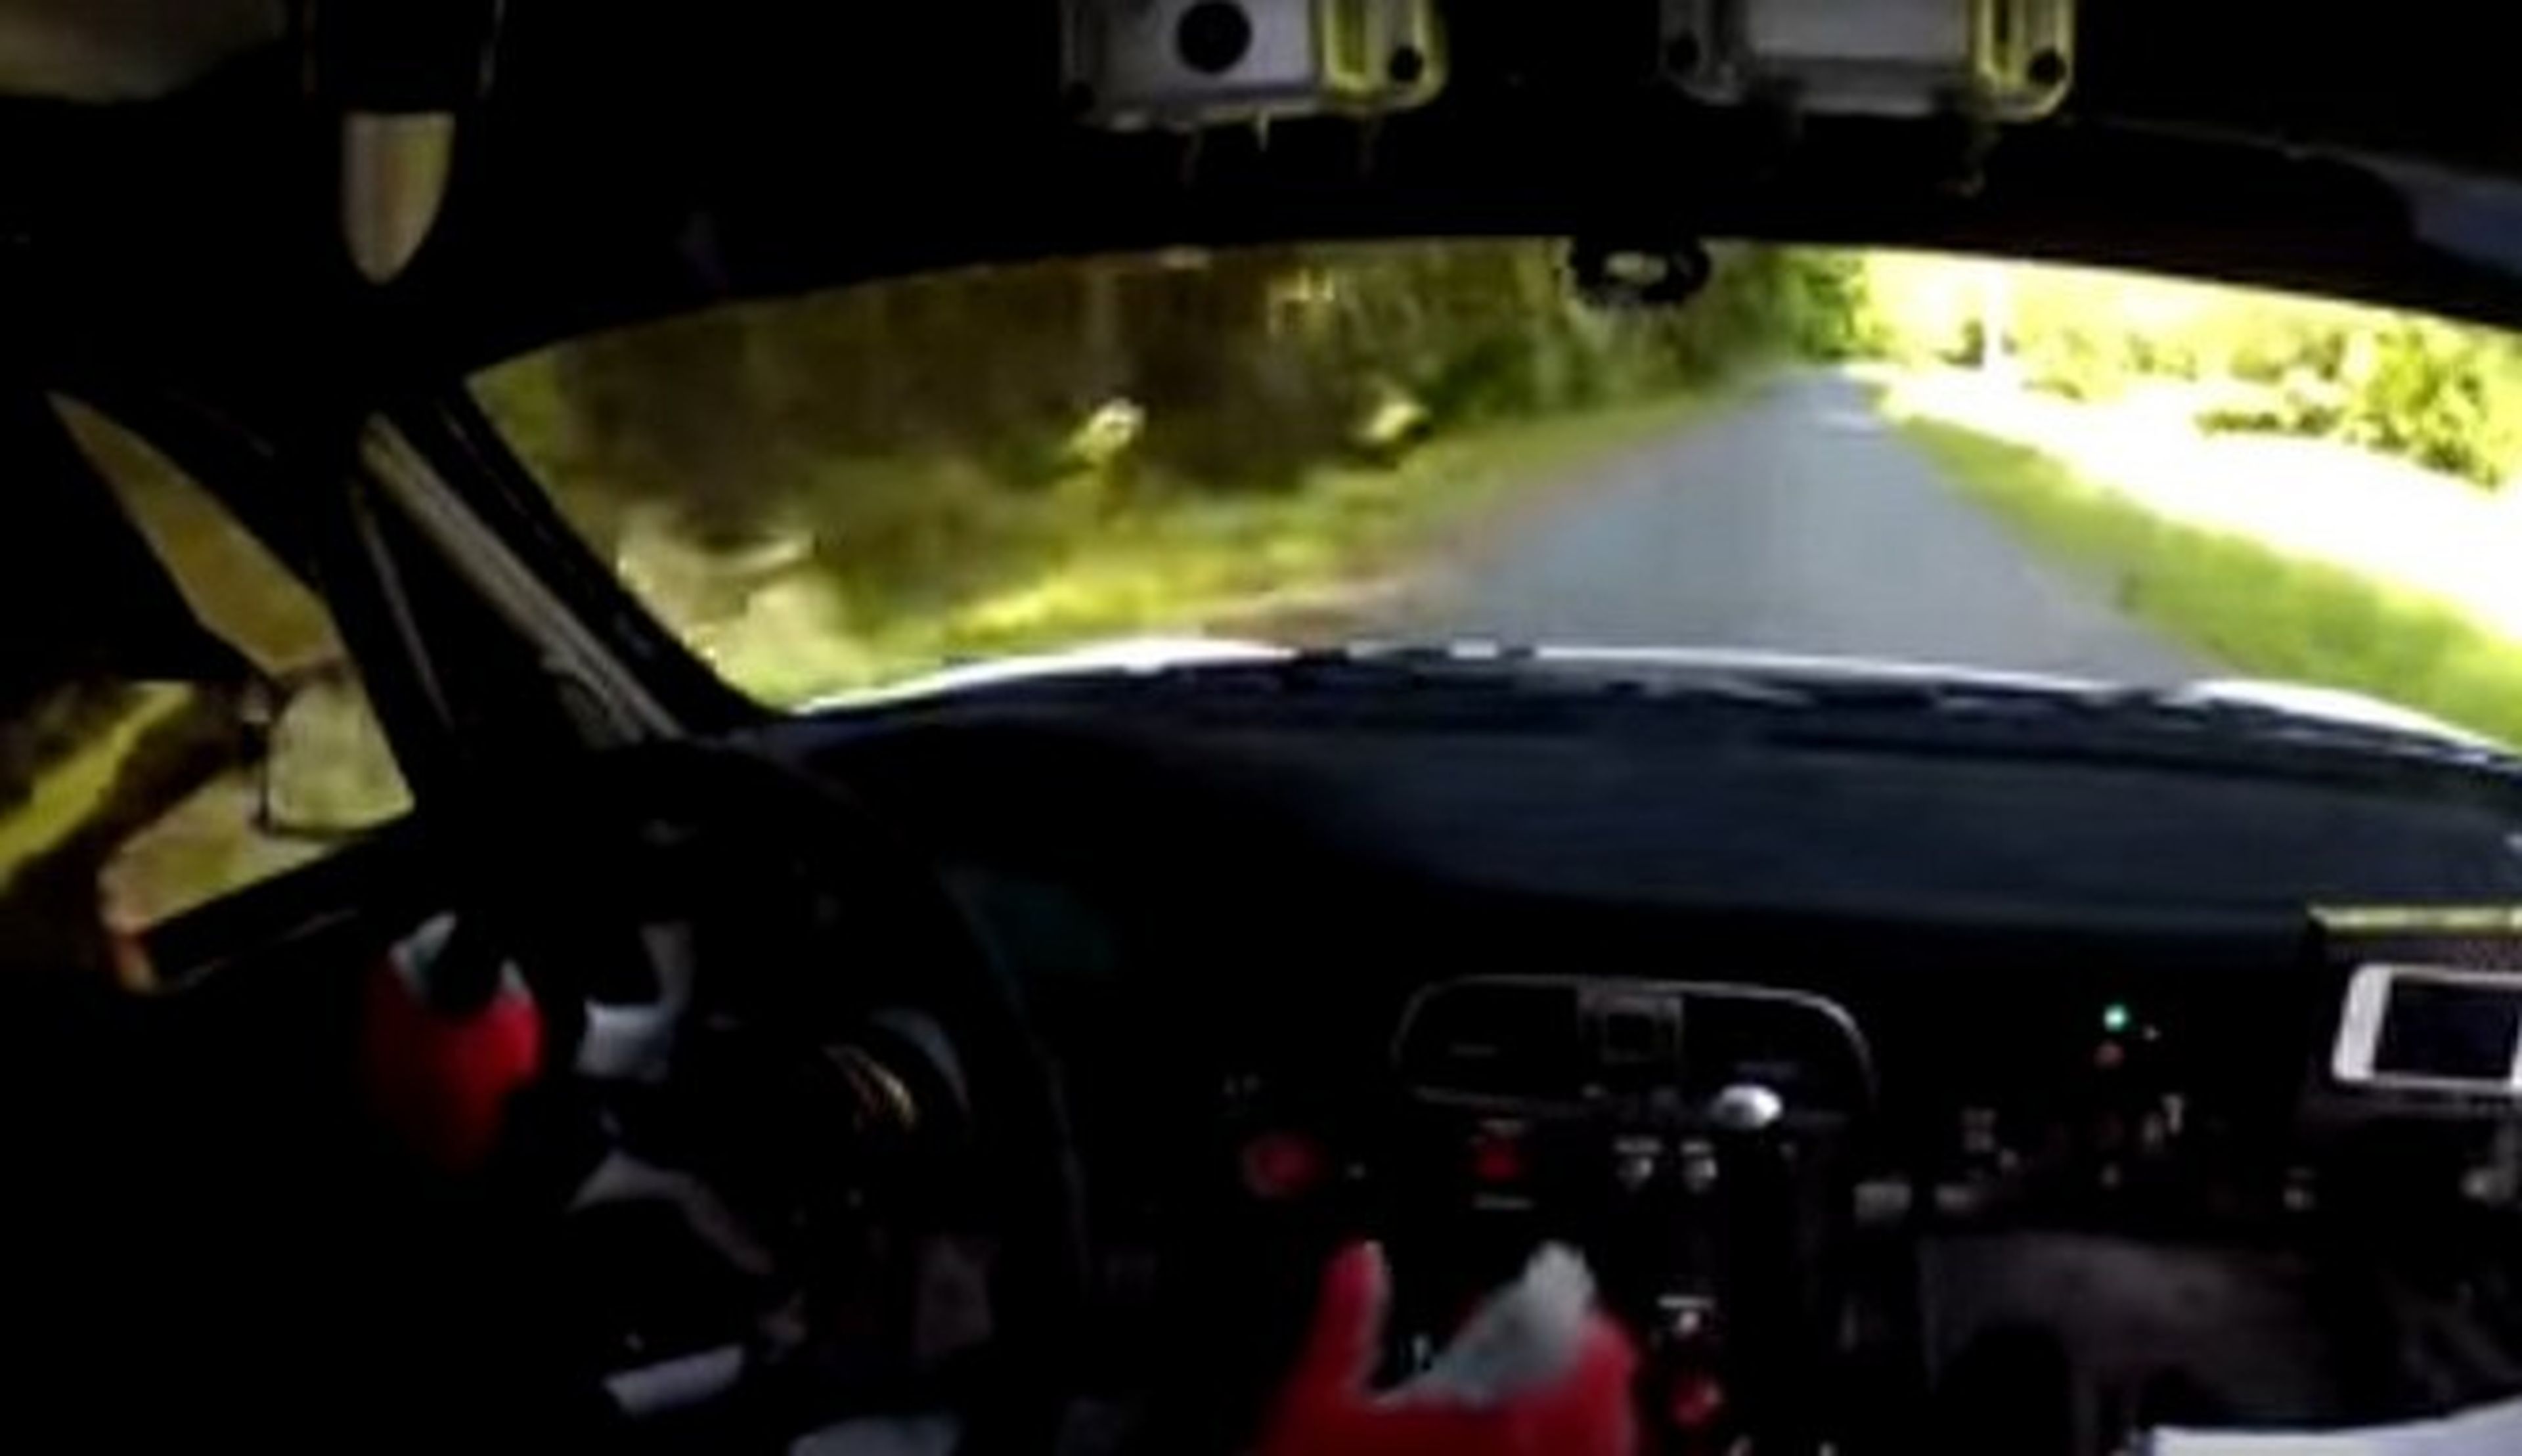 Vídeo on board: De rallye con un Porsche 911 GT3